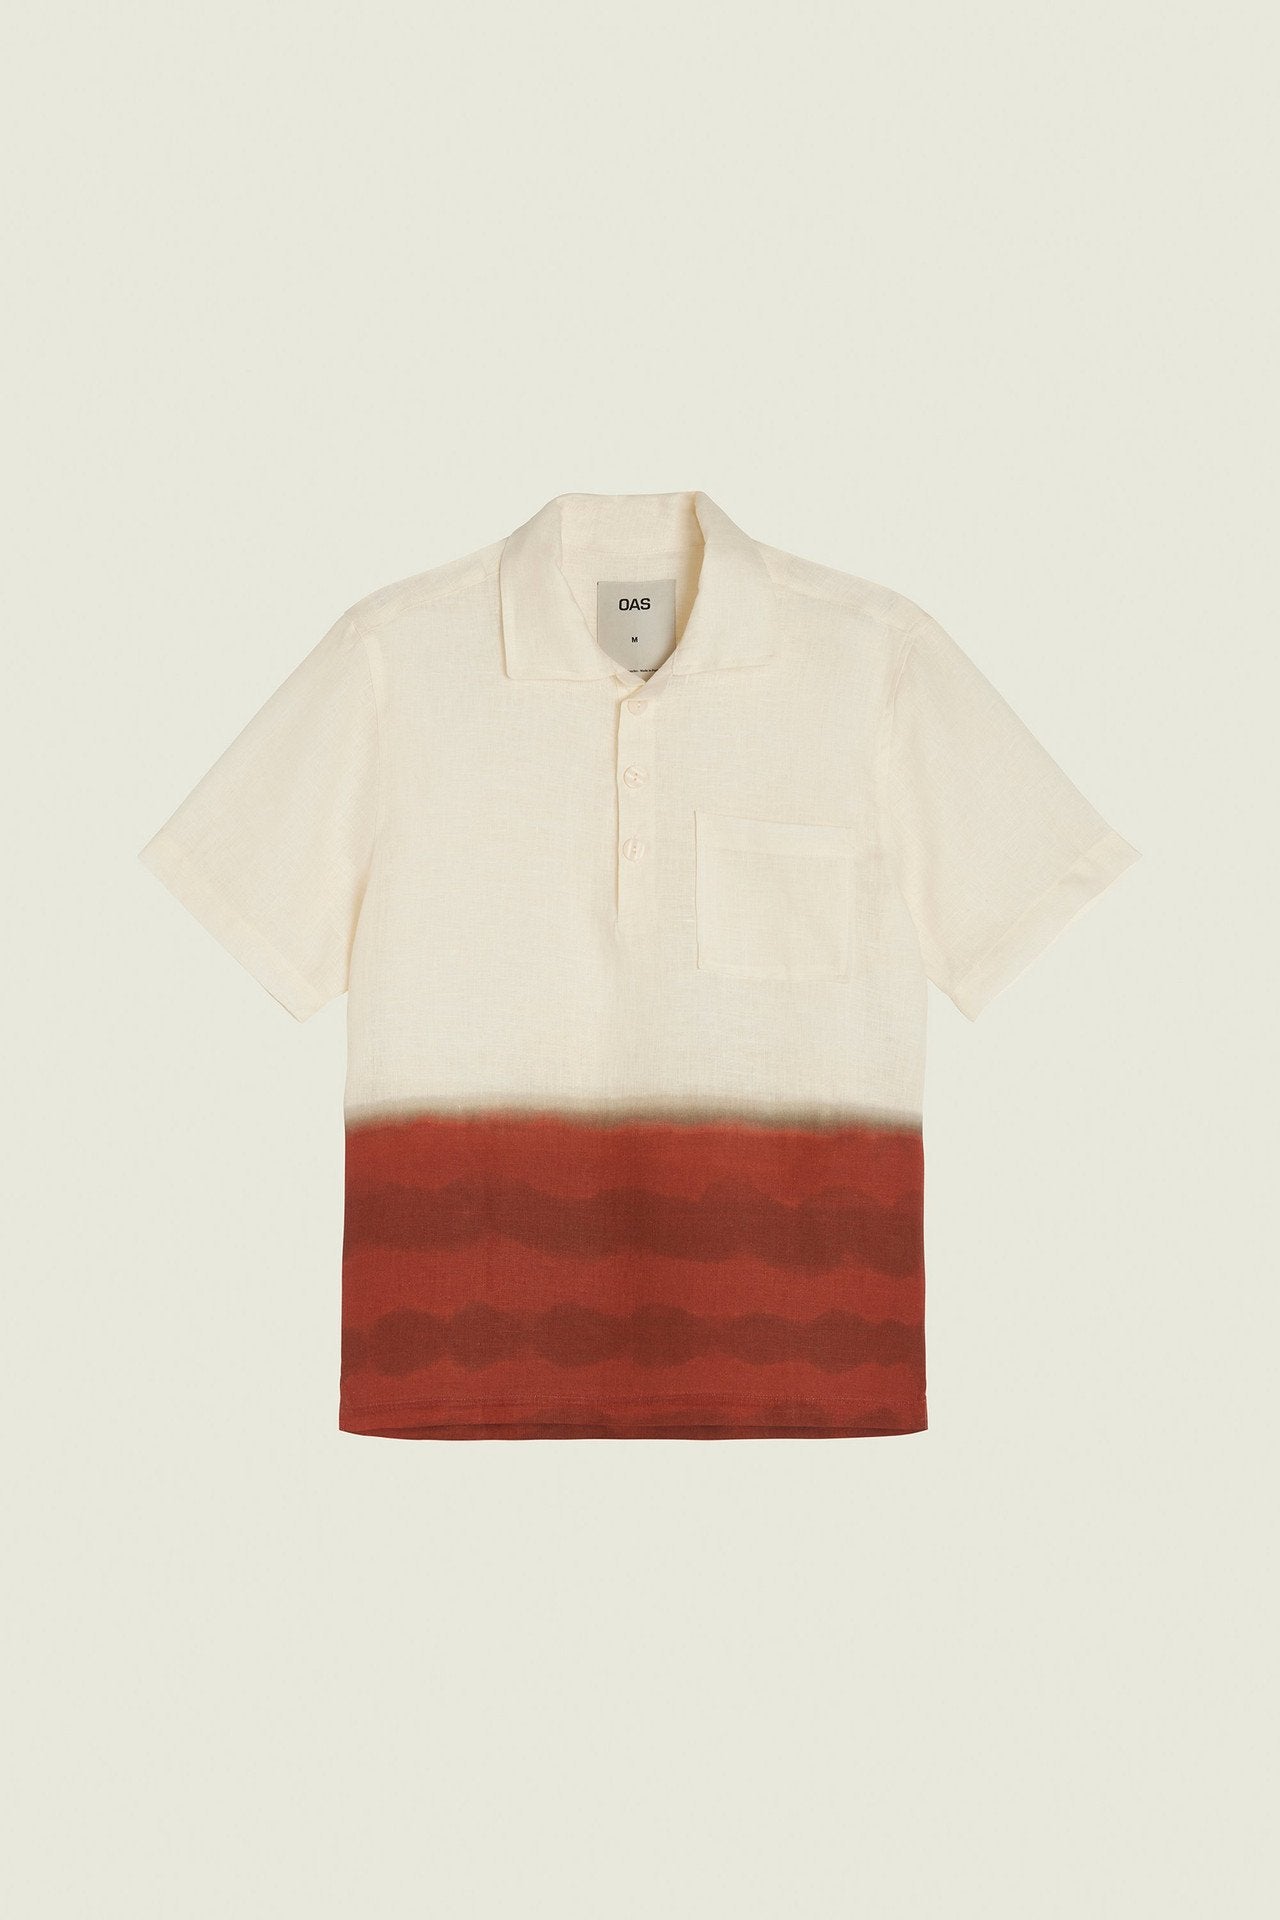 OAS Vista Girona Linen Shirt LEO BOUTIQUE